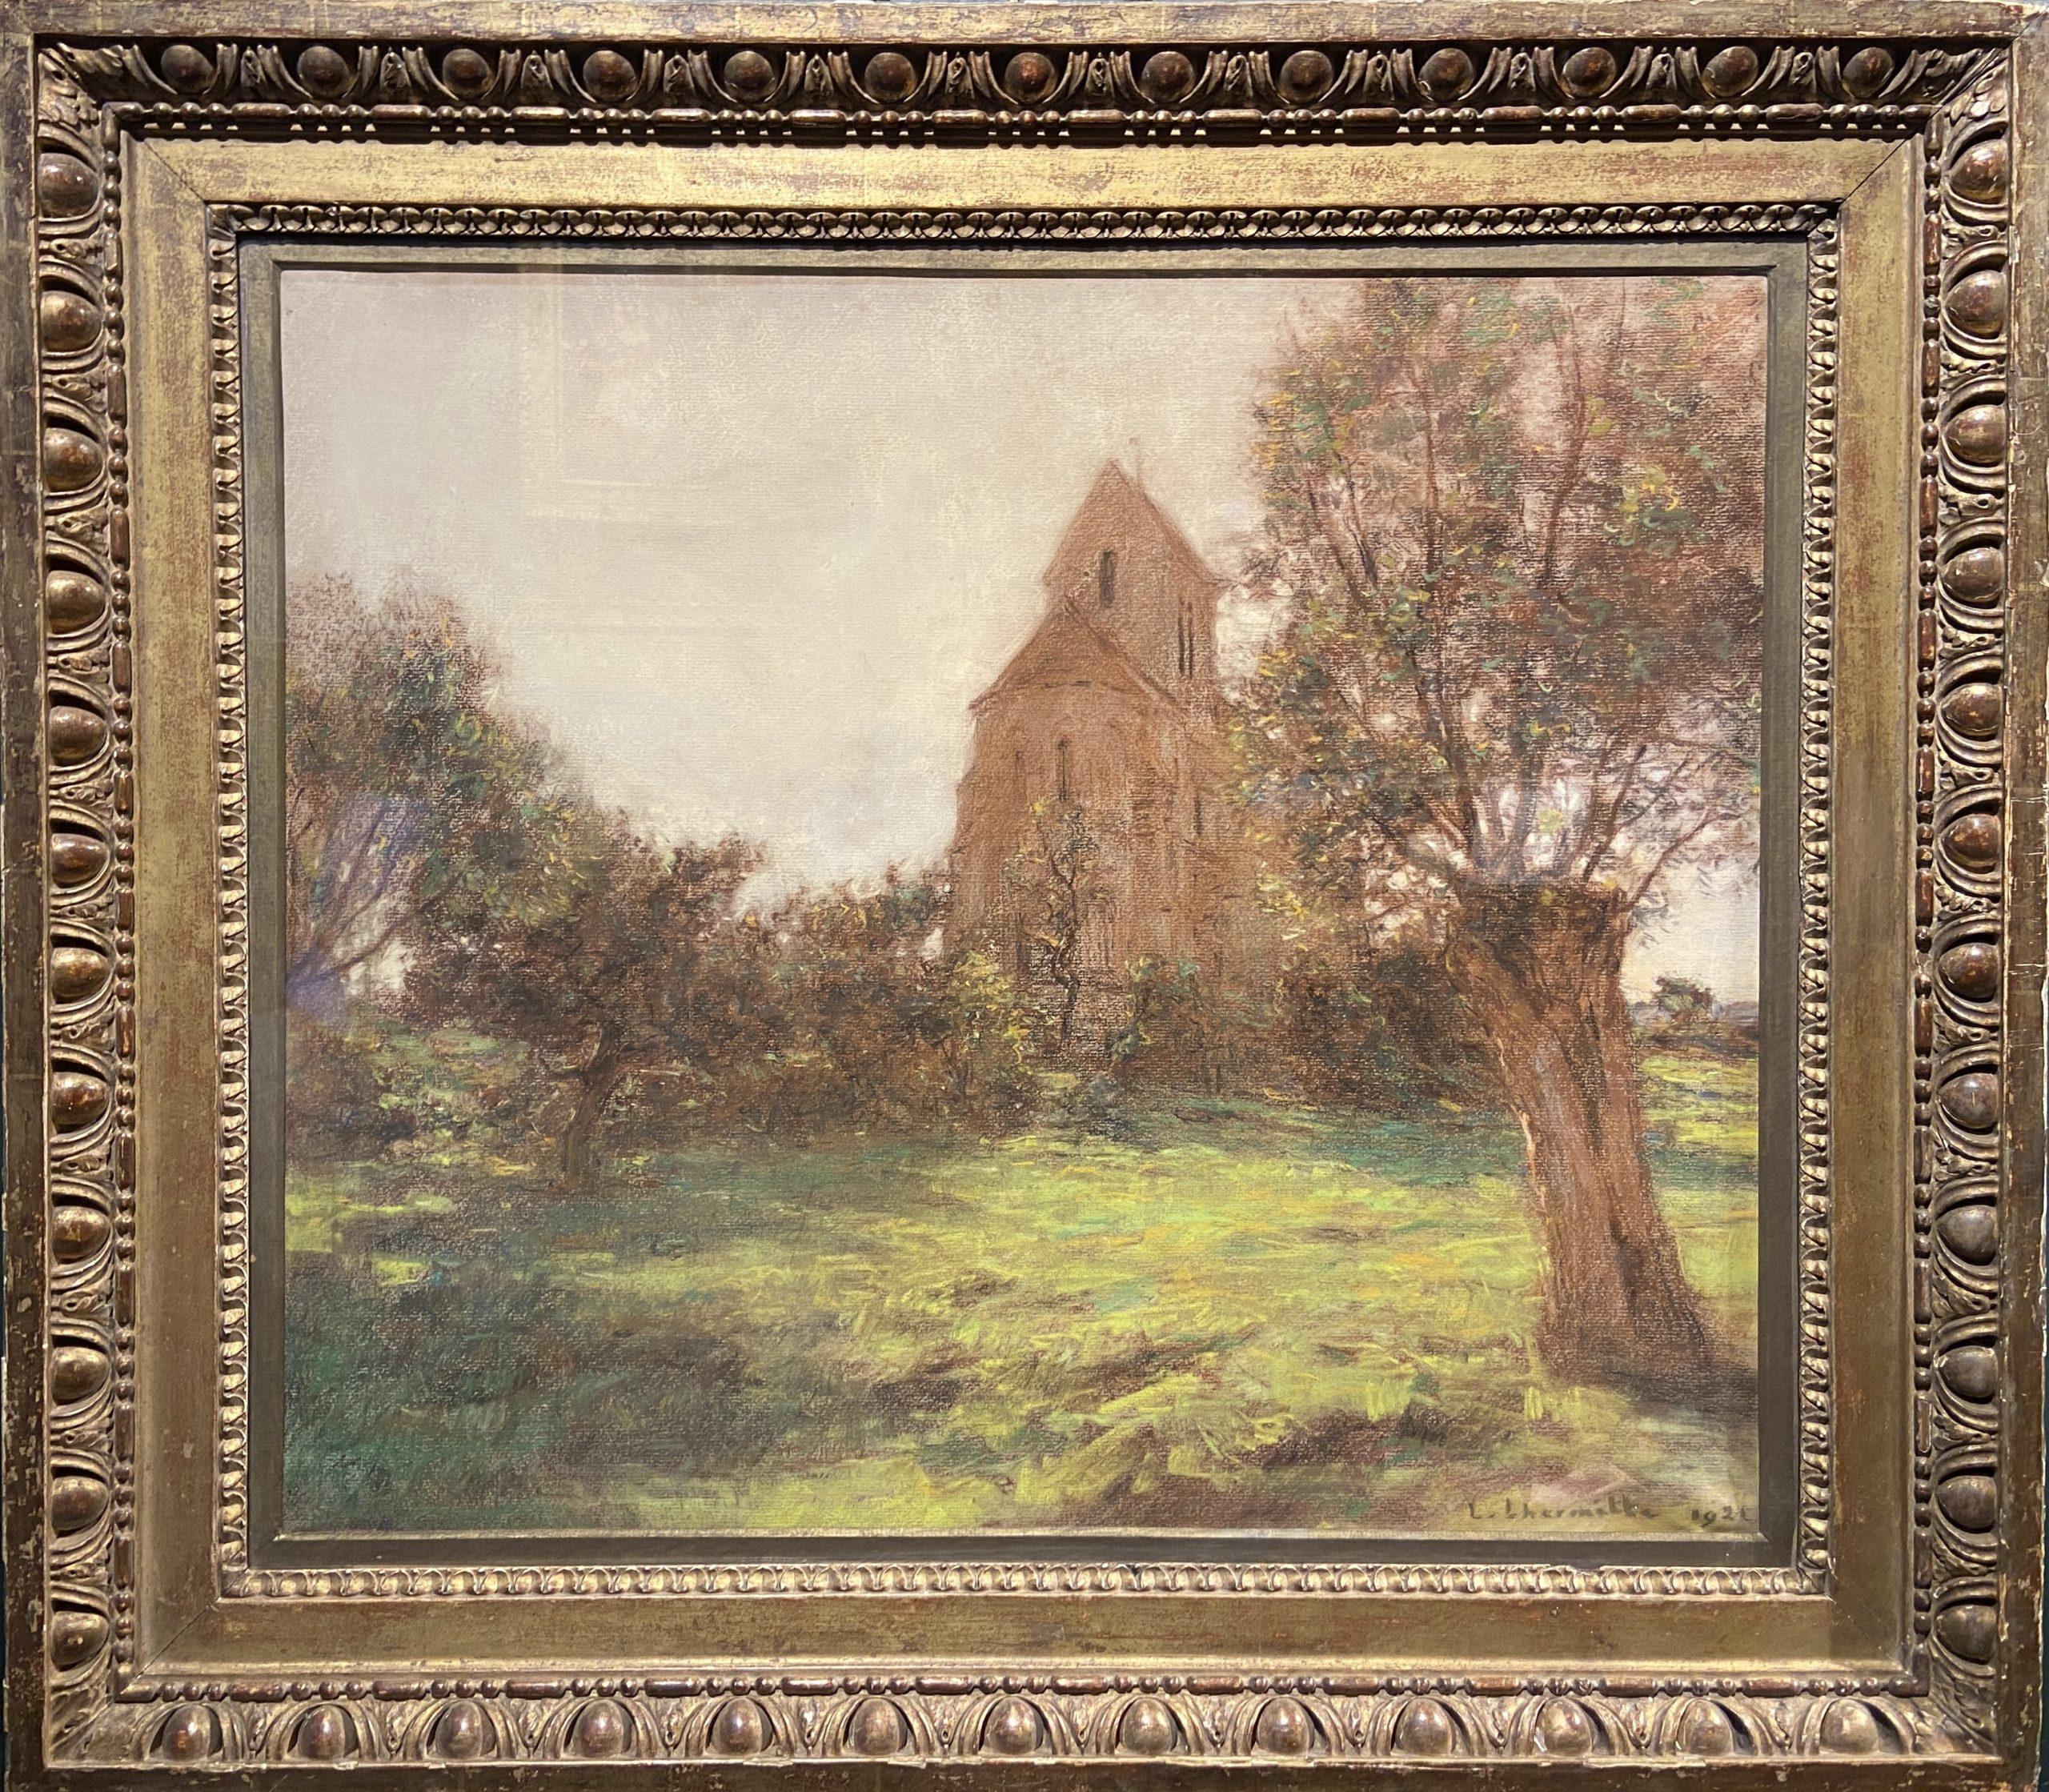 L'eglise de Mézy-Moulins, Pastel Paysage français du 19ème siècle, Signé et daté 1921 - Art de Léon Augustin Lhermitte